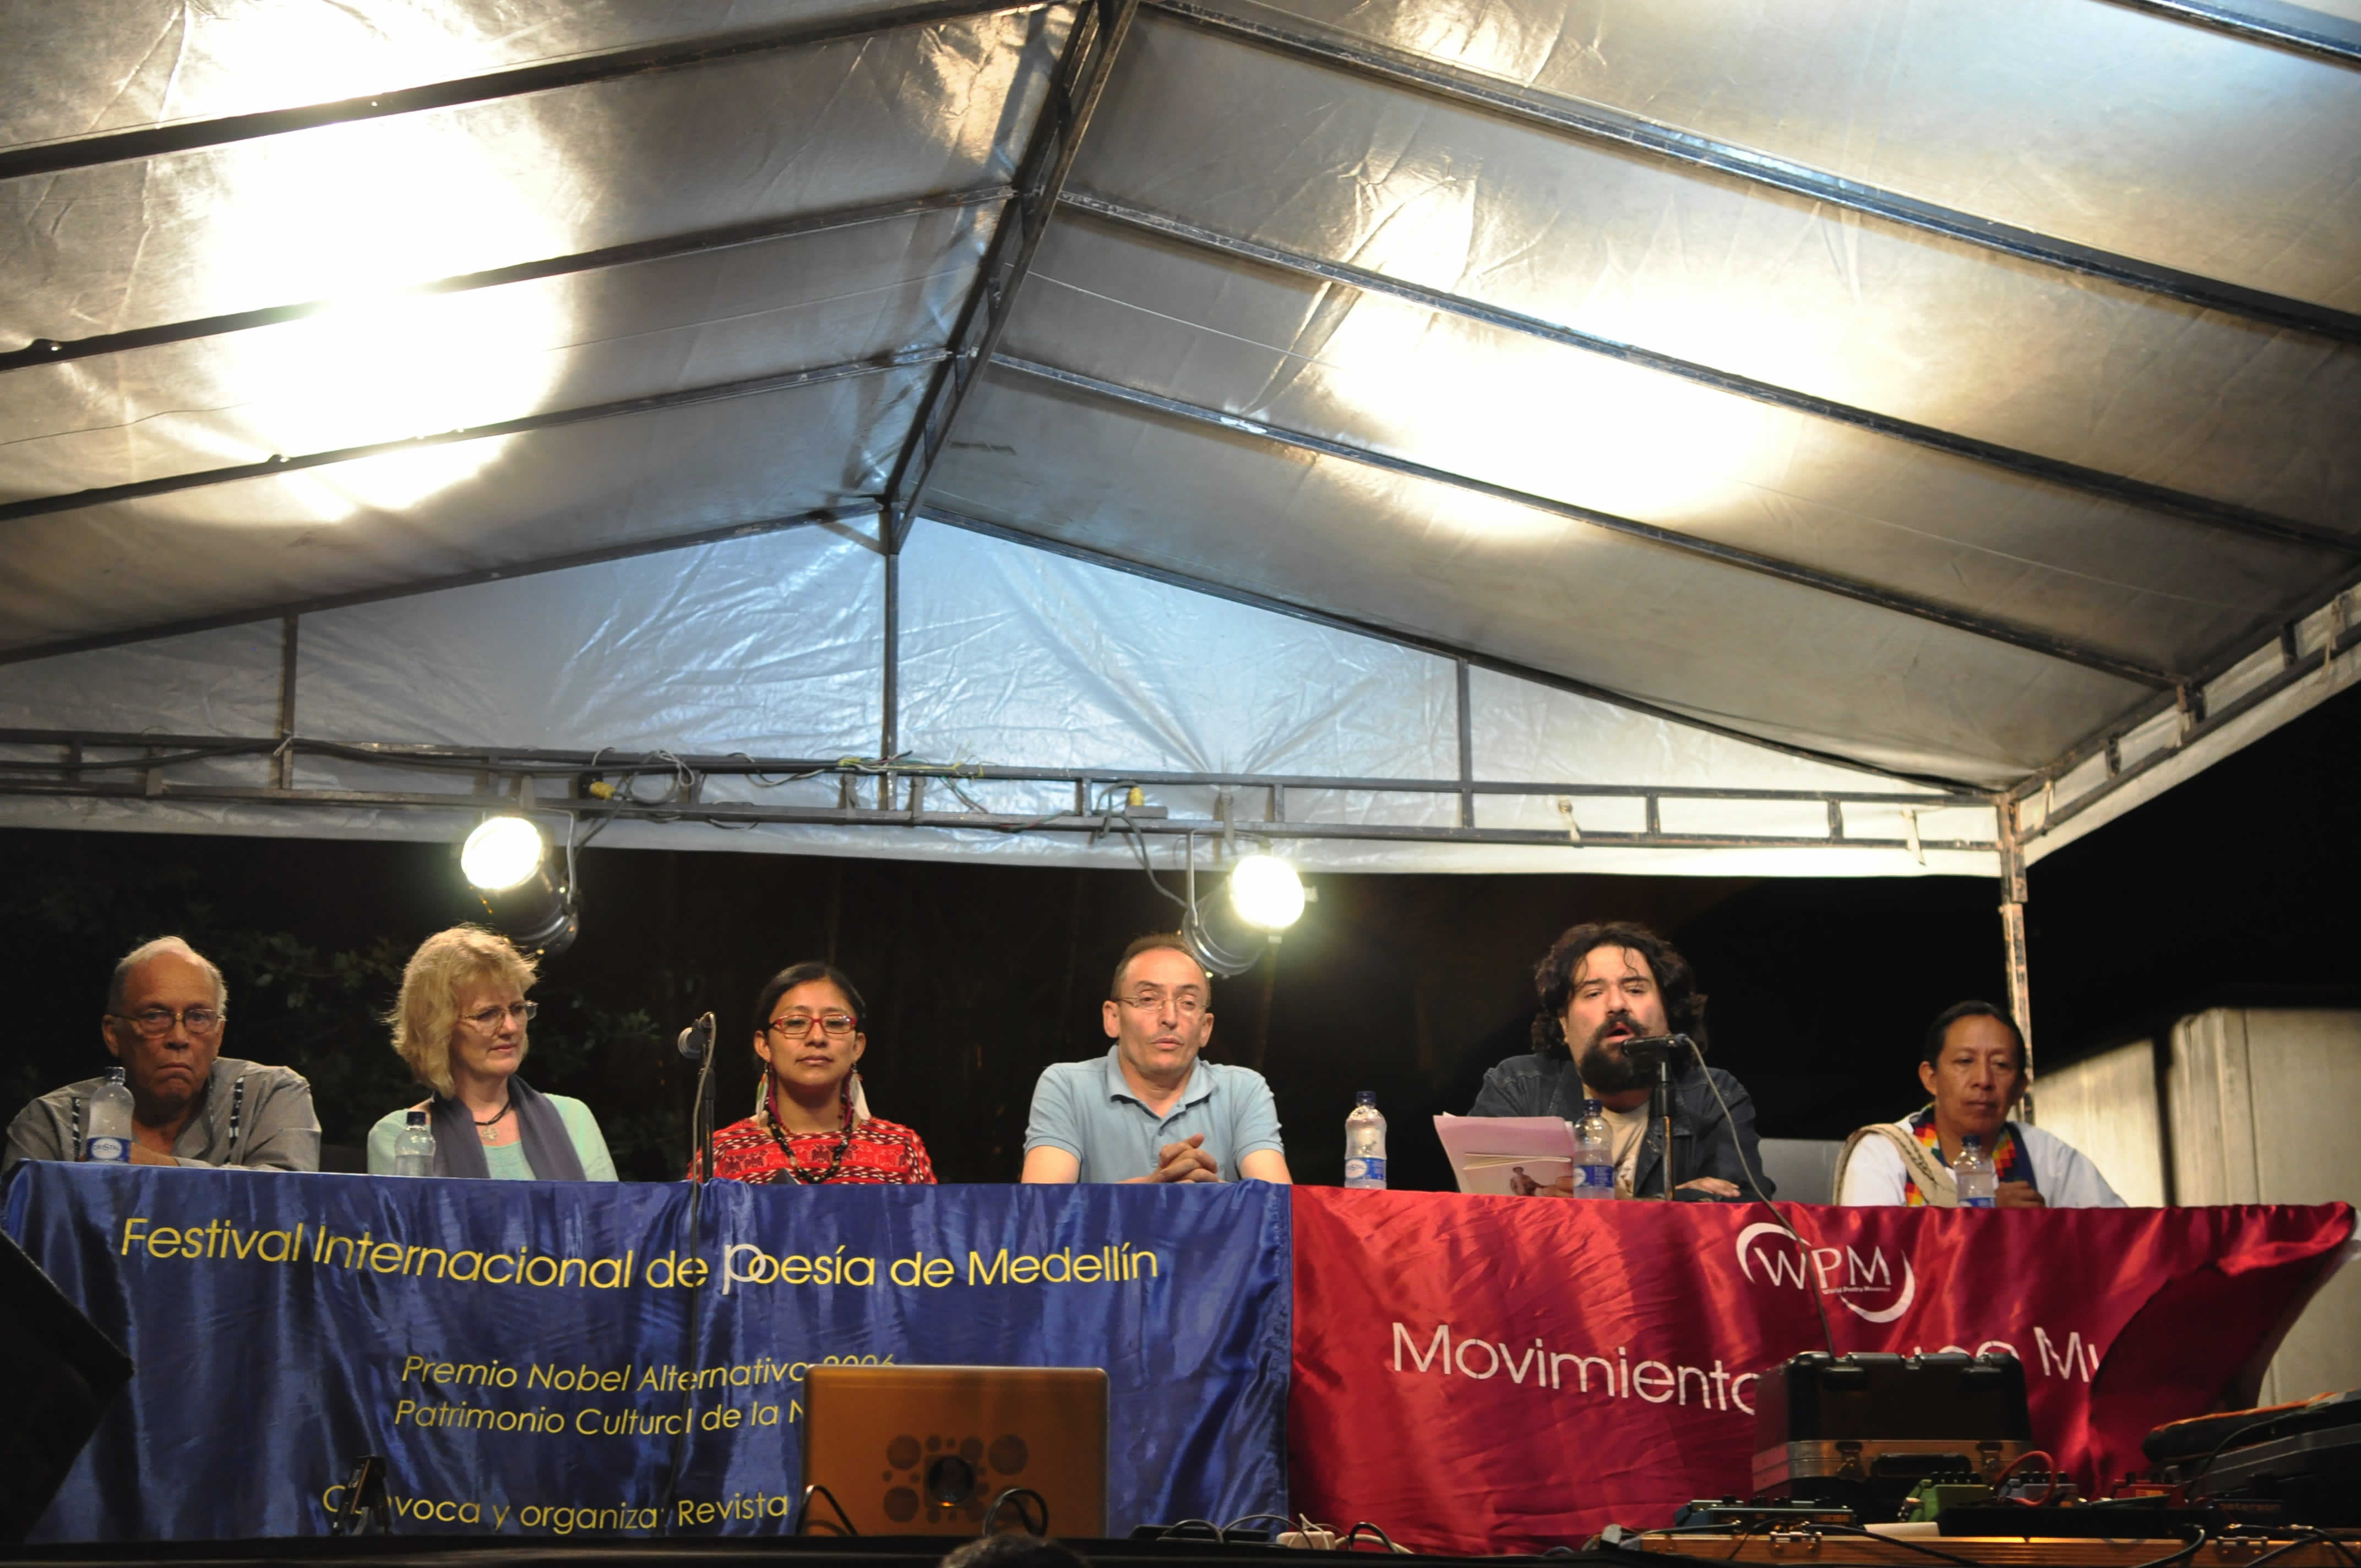 De izquierda a derecha Josaphat Robert Large (Haití), Moya Cannon (República de Irlanda), Rosa Chávez (Guatemala, Nación Maya), Achour Fenni (Argelia), Javier Bello (Chile), Fredy Chicangana (Colombia, Nación Yanacuna)